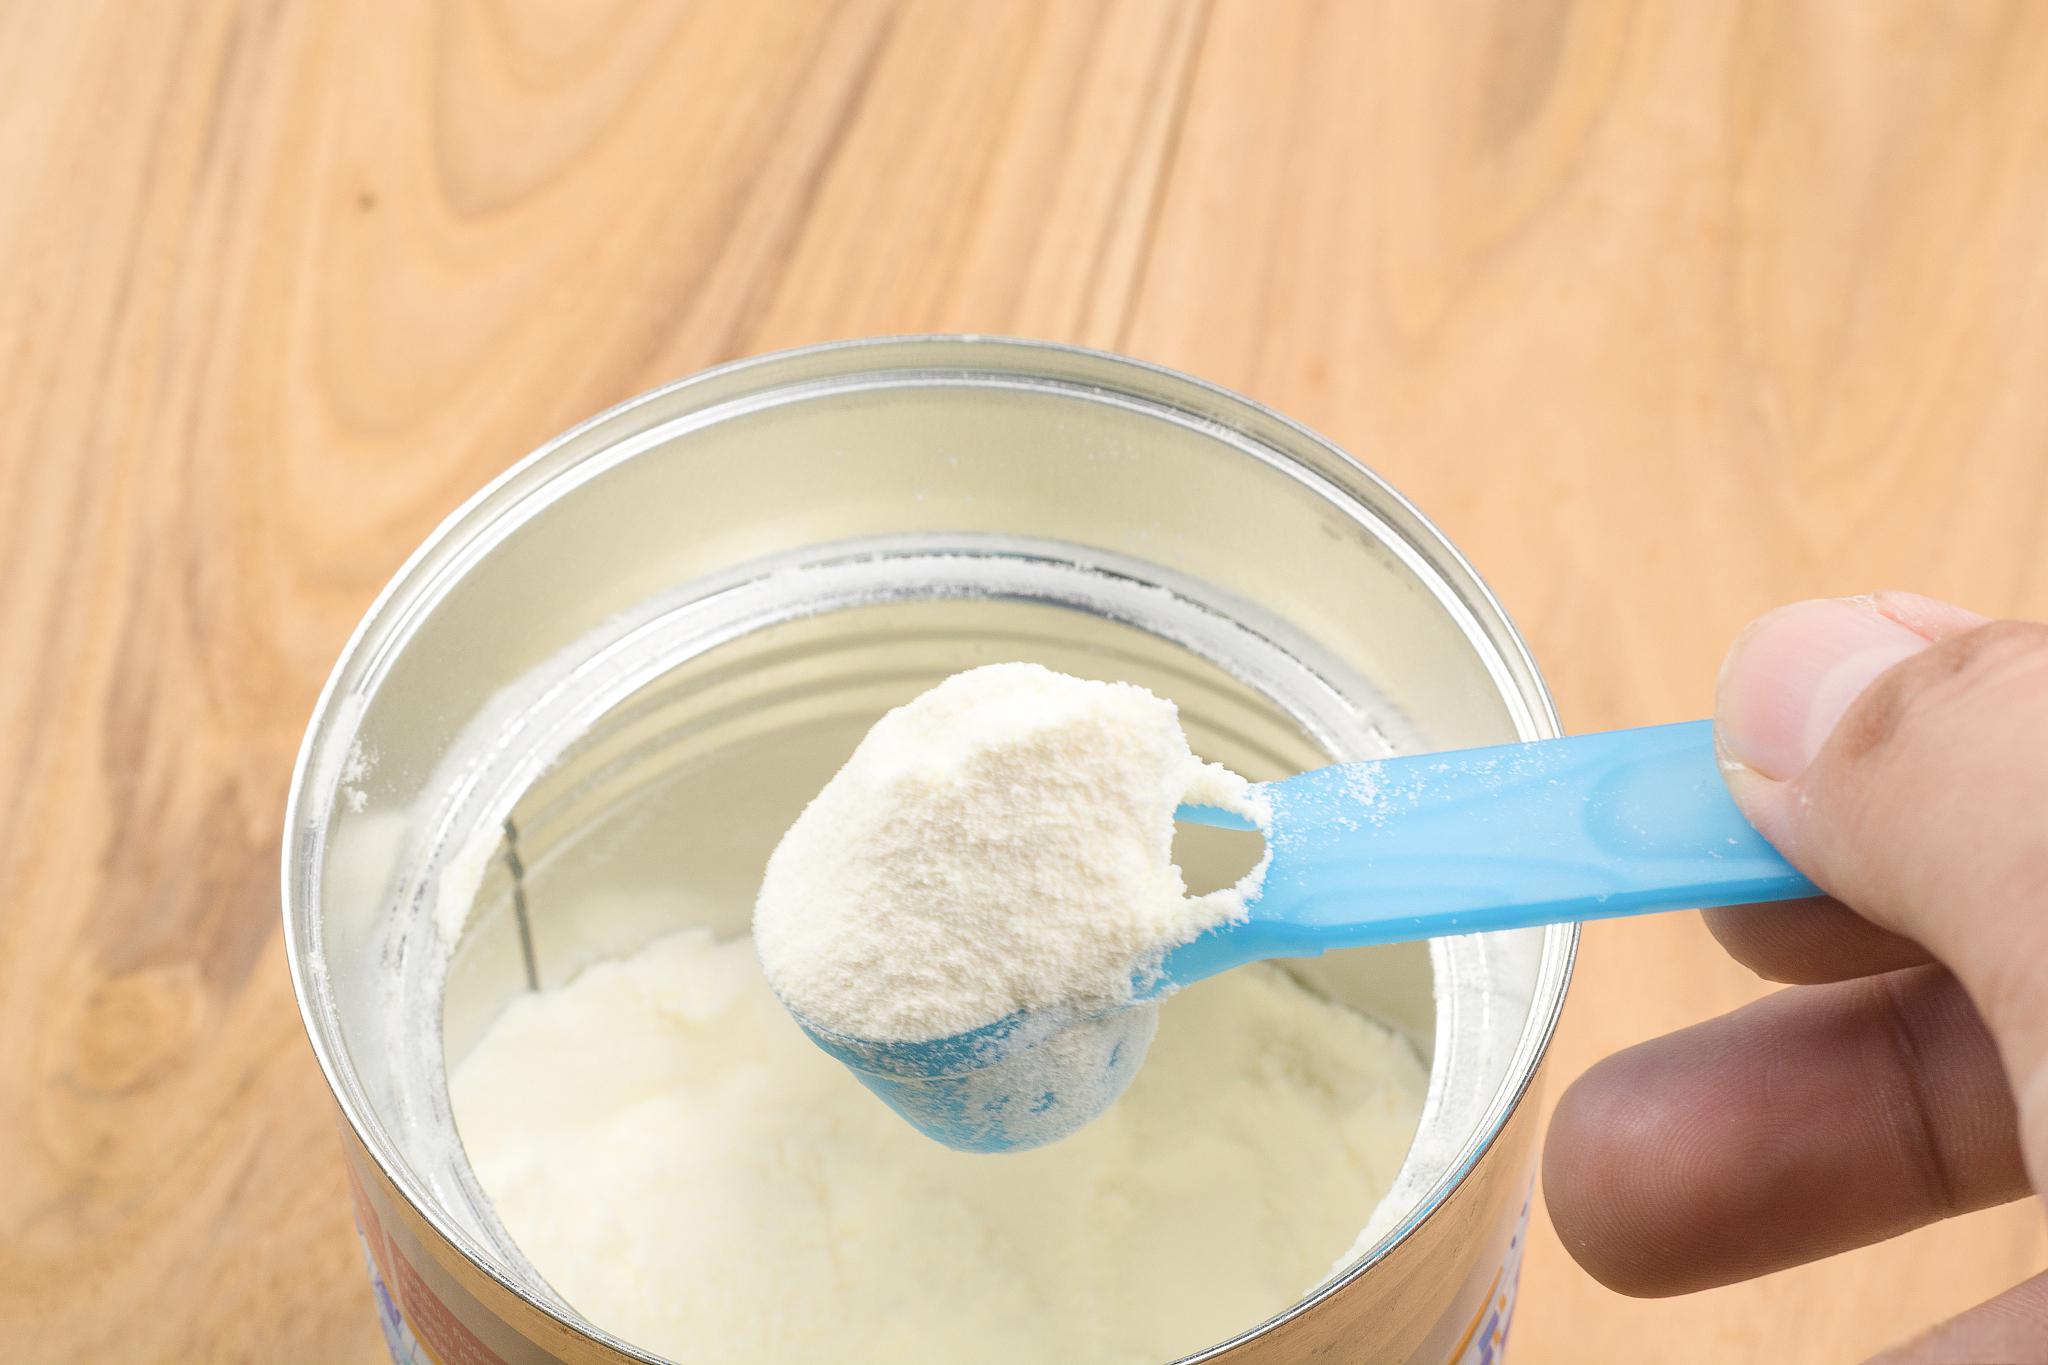 安佳奶粉保质期问题详解 本文将深入探讨安佳奶粉的保质期问题